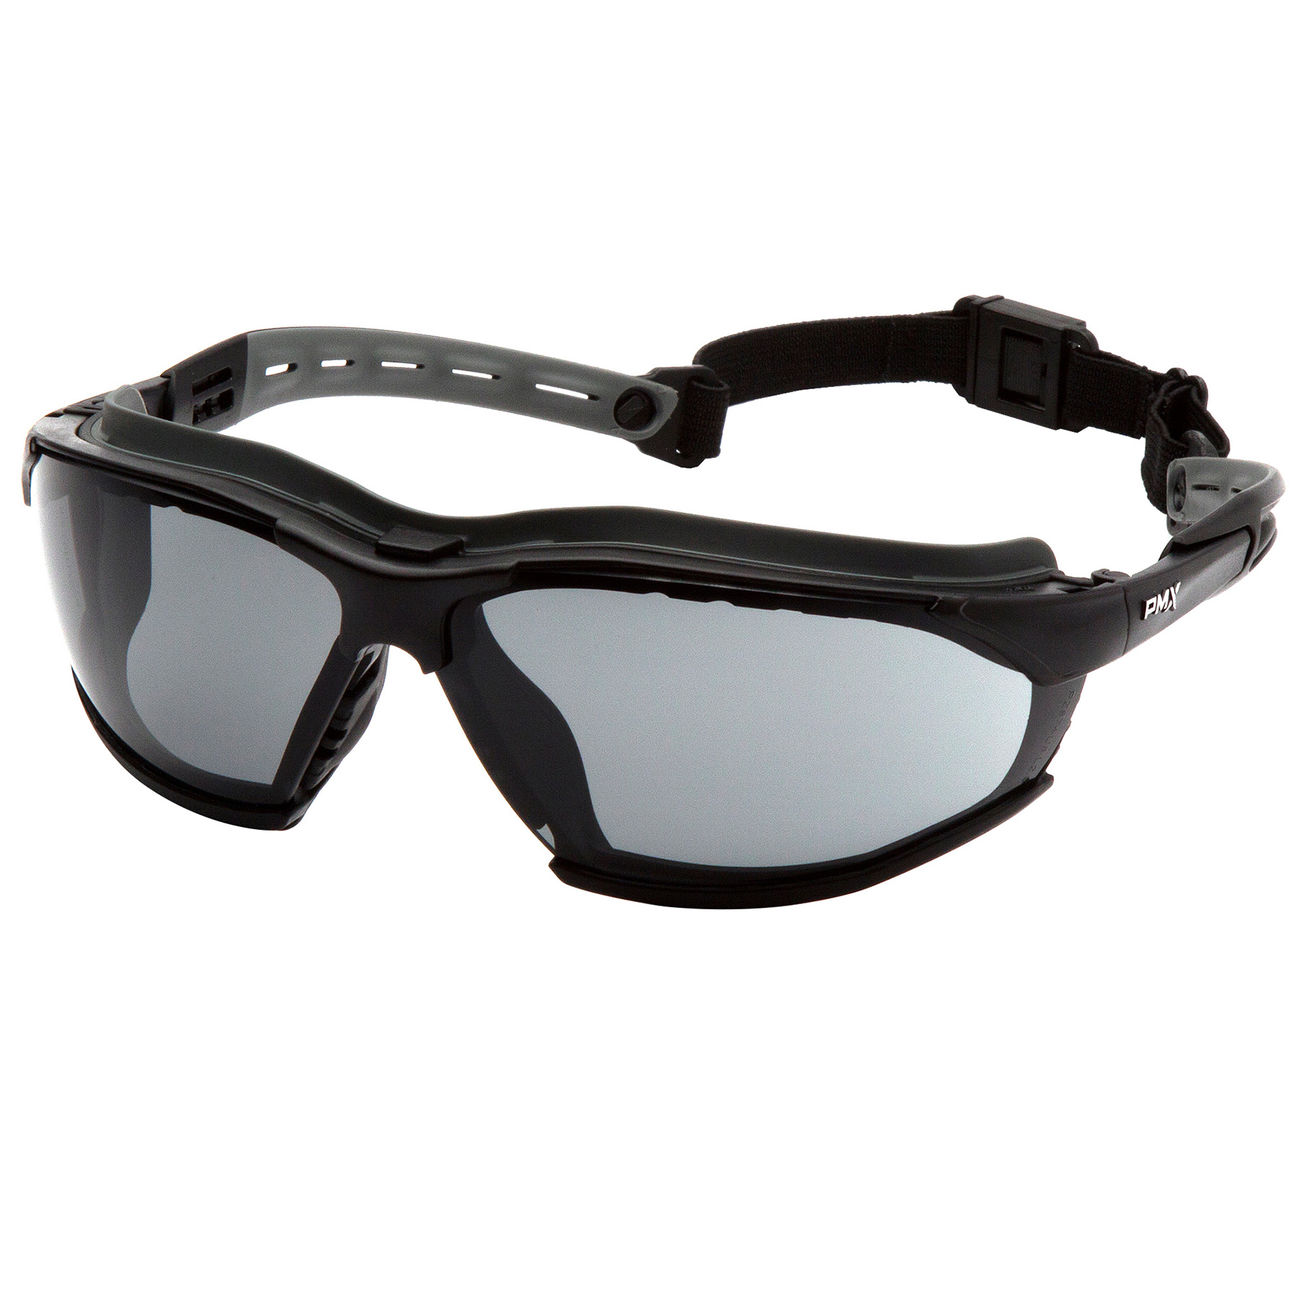 Vented Schutzbrille Brille Augenschutz Protective Lab Anti Fog Klar HH 